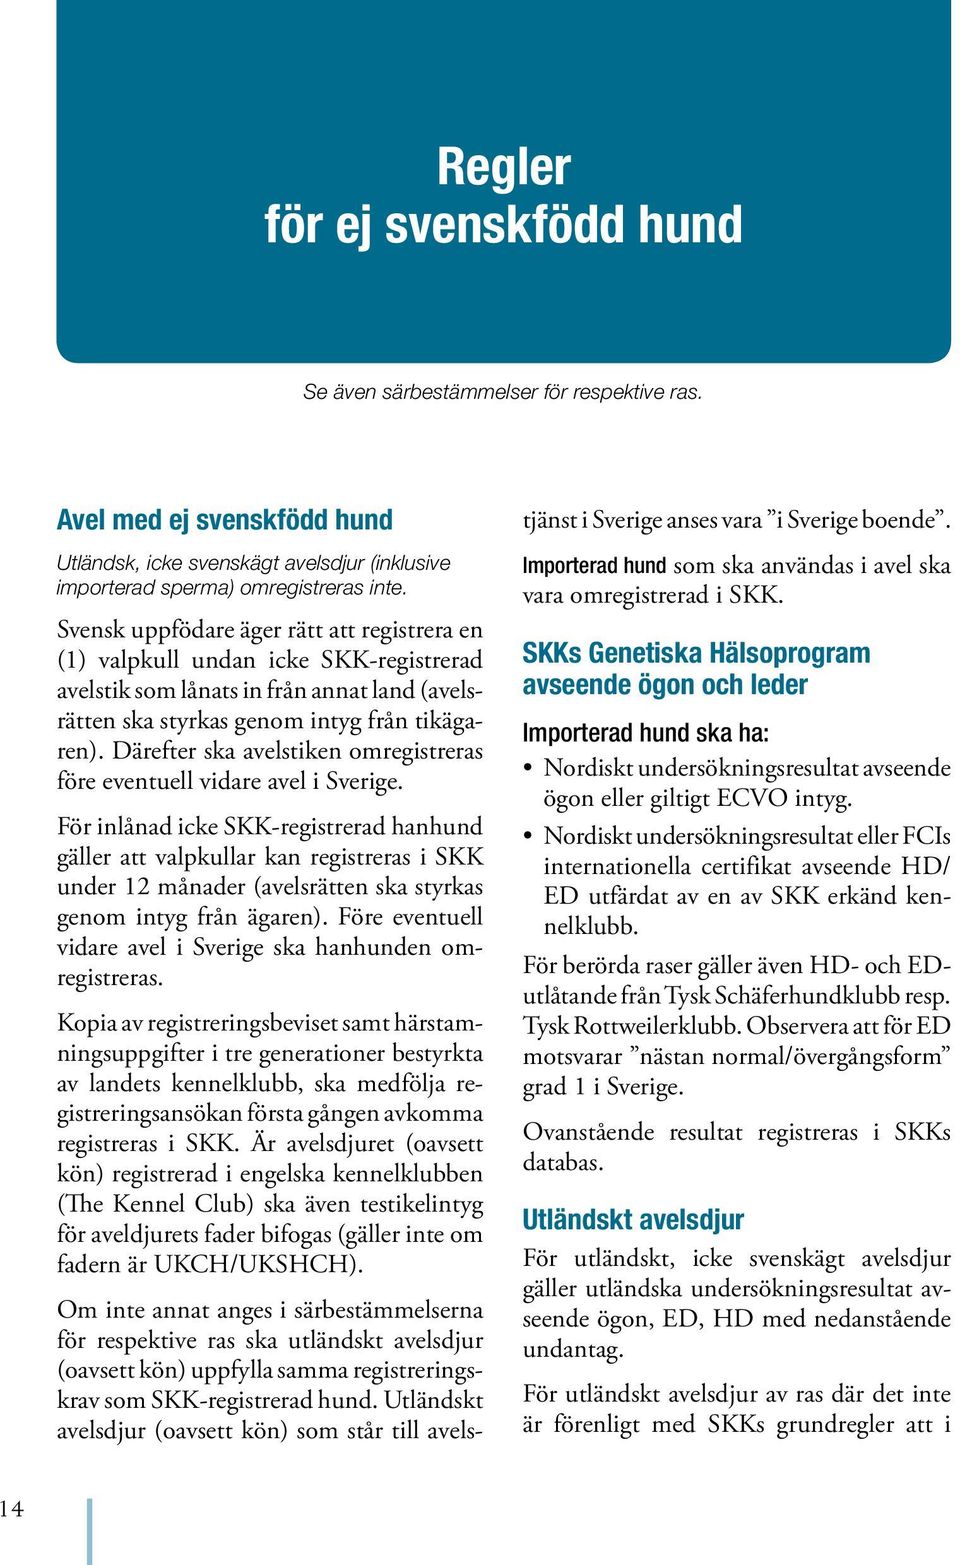 Svensk uppfödare äger rätt att registrera en (1) valpkull undan icke SKK-registrerad avelstik som lånats in från annat land (avelsrätten ska styrkas genom intyg från tikägaren).